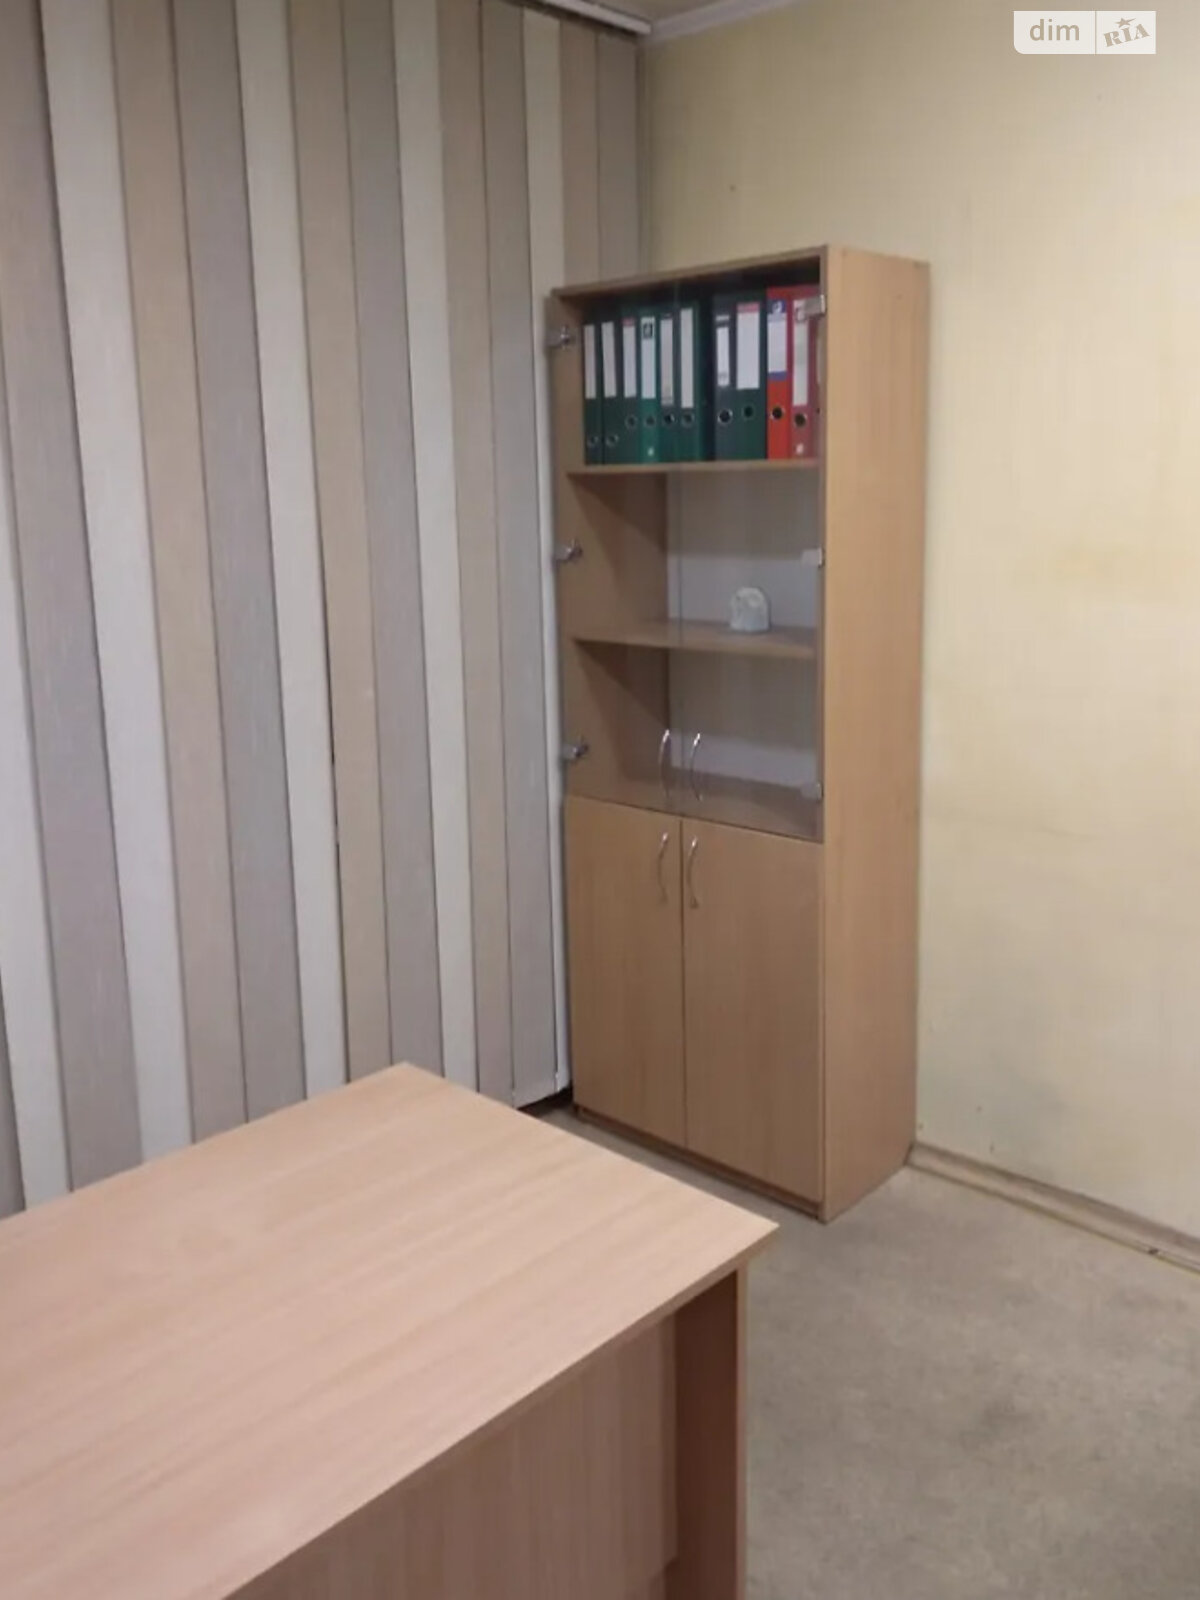 Оренда офісного приміщення в Дніпрі, Слобожанський проспект 85, приміщень - 3, поверх - 1 фото 1